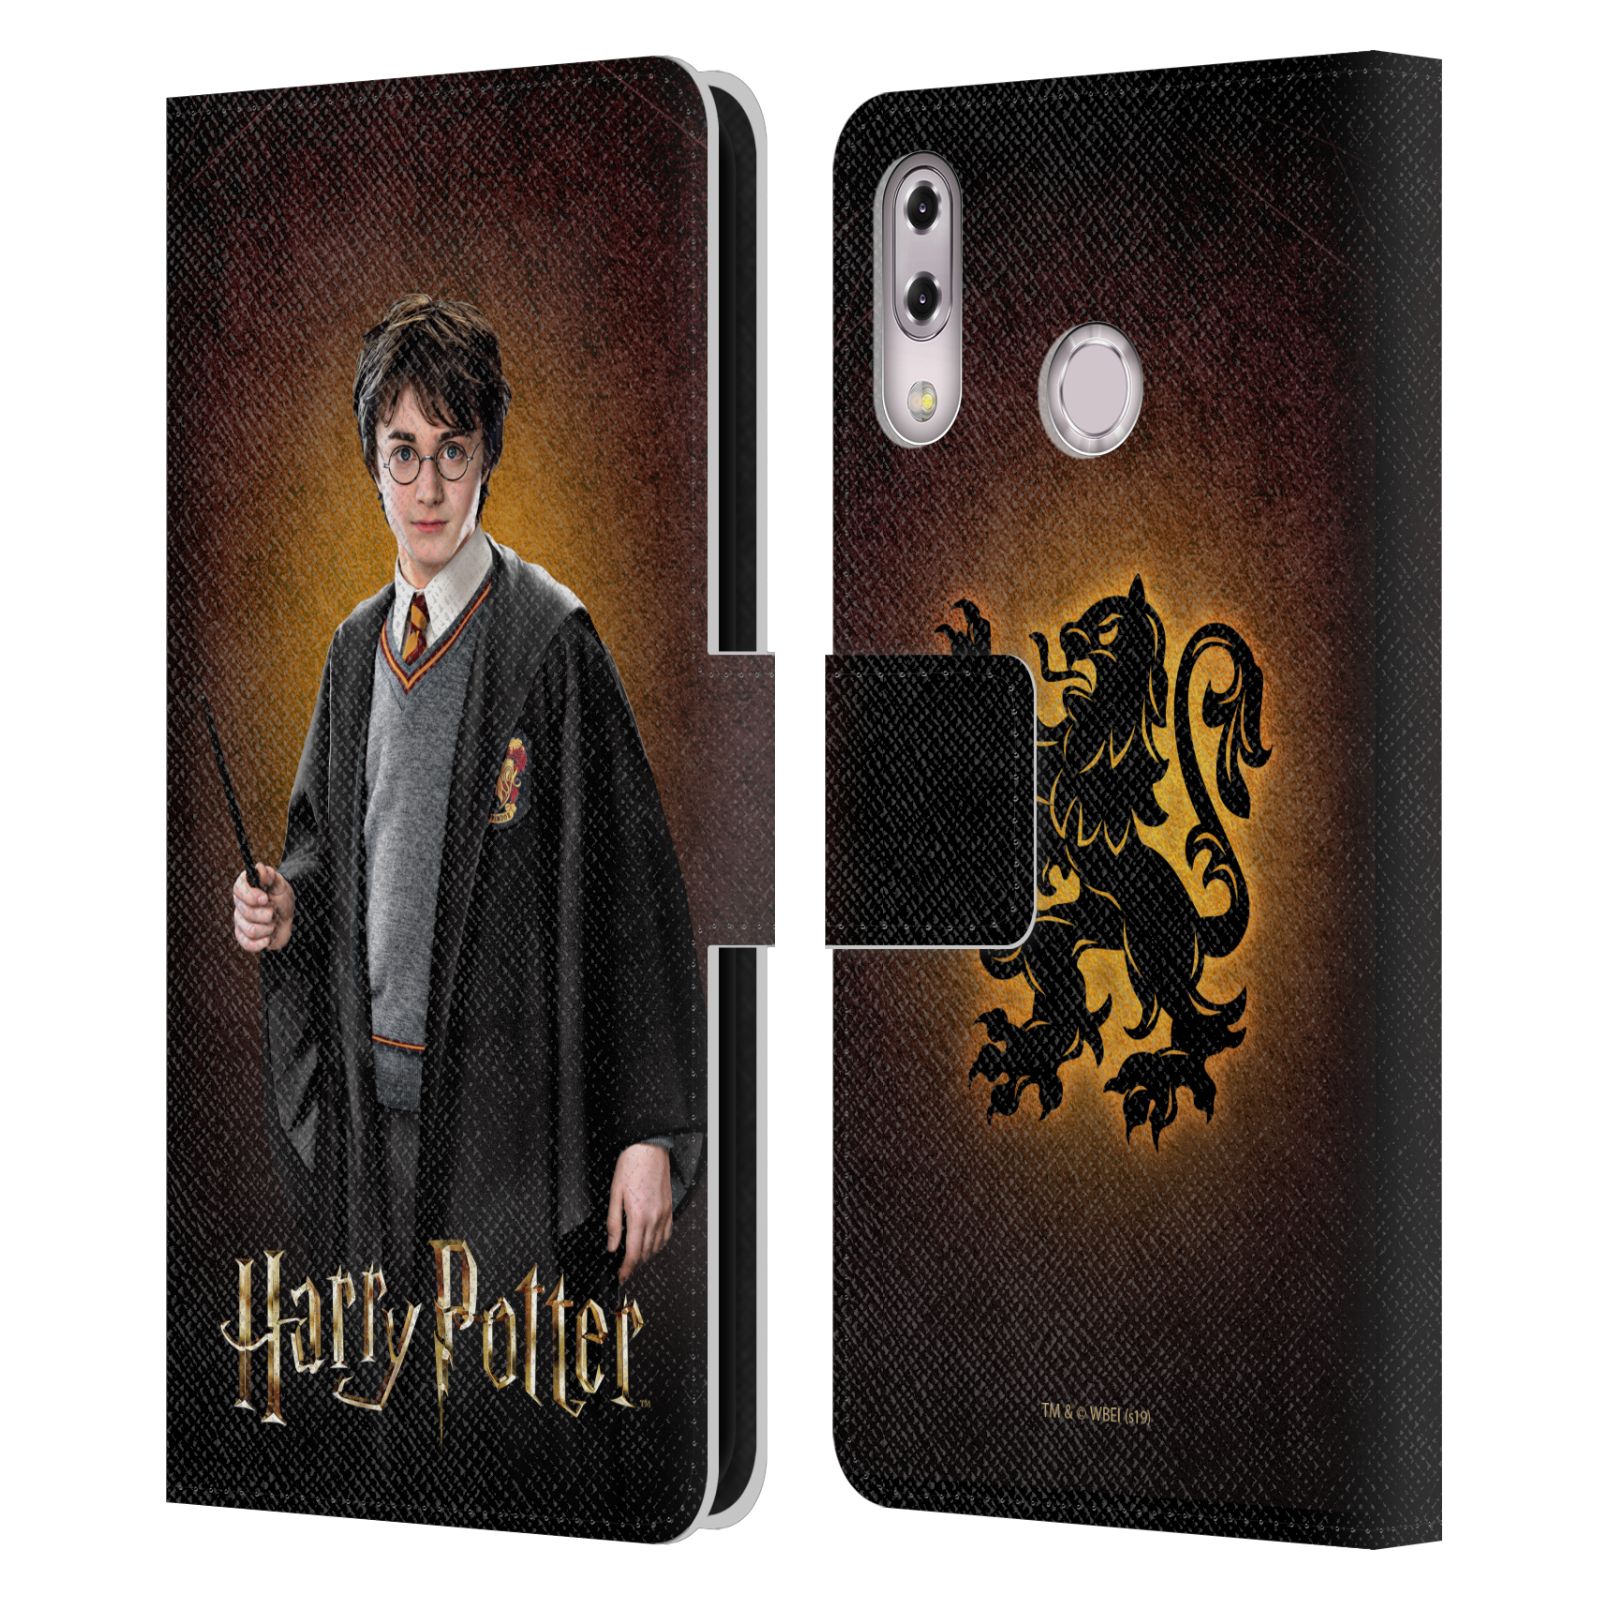 Pouzdro na mobil Asus Zenfone 5z ZS620KL, 5 ZE620KL  - HEAD CASE - Harry Potter - Harry Potter portrét